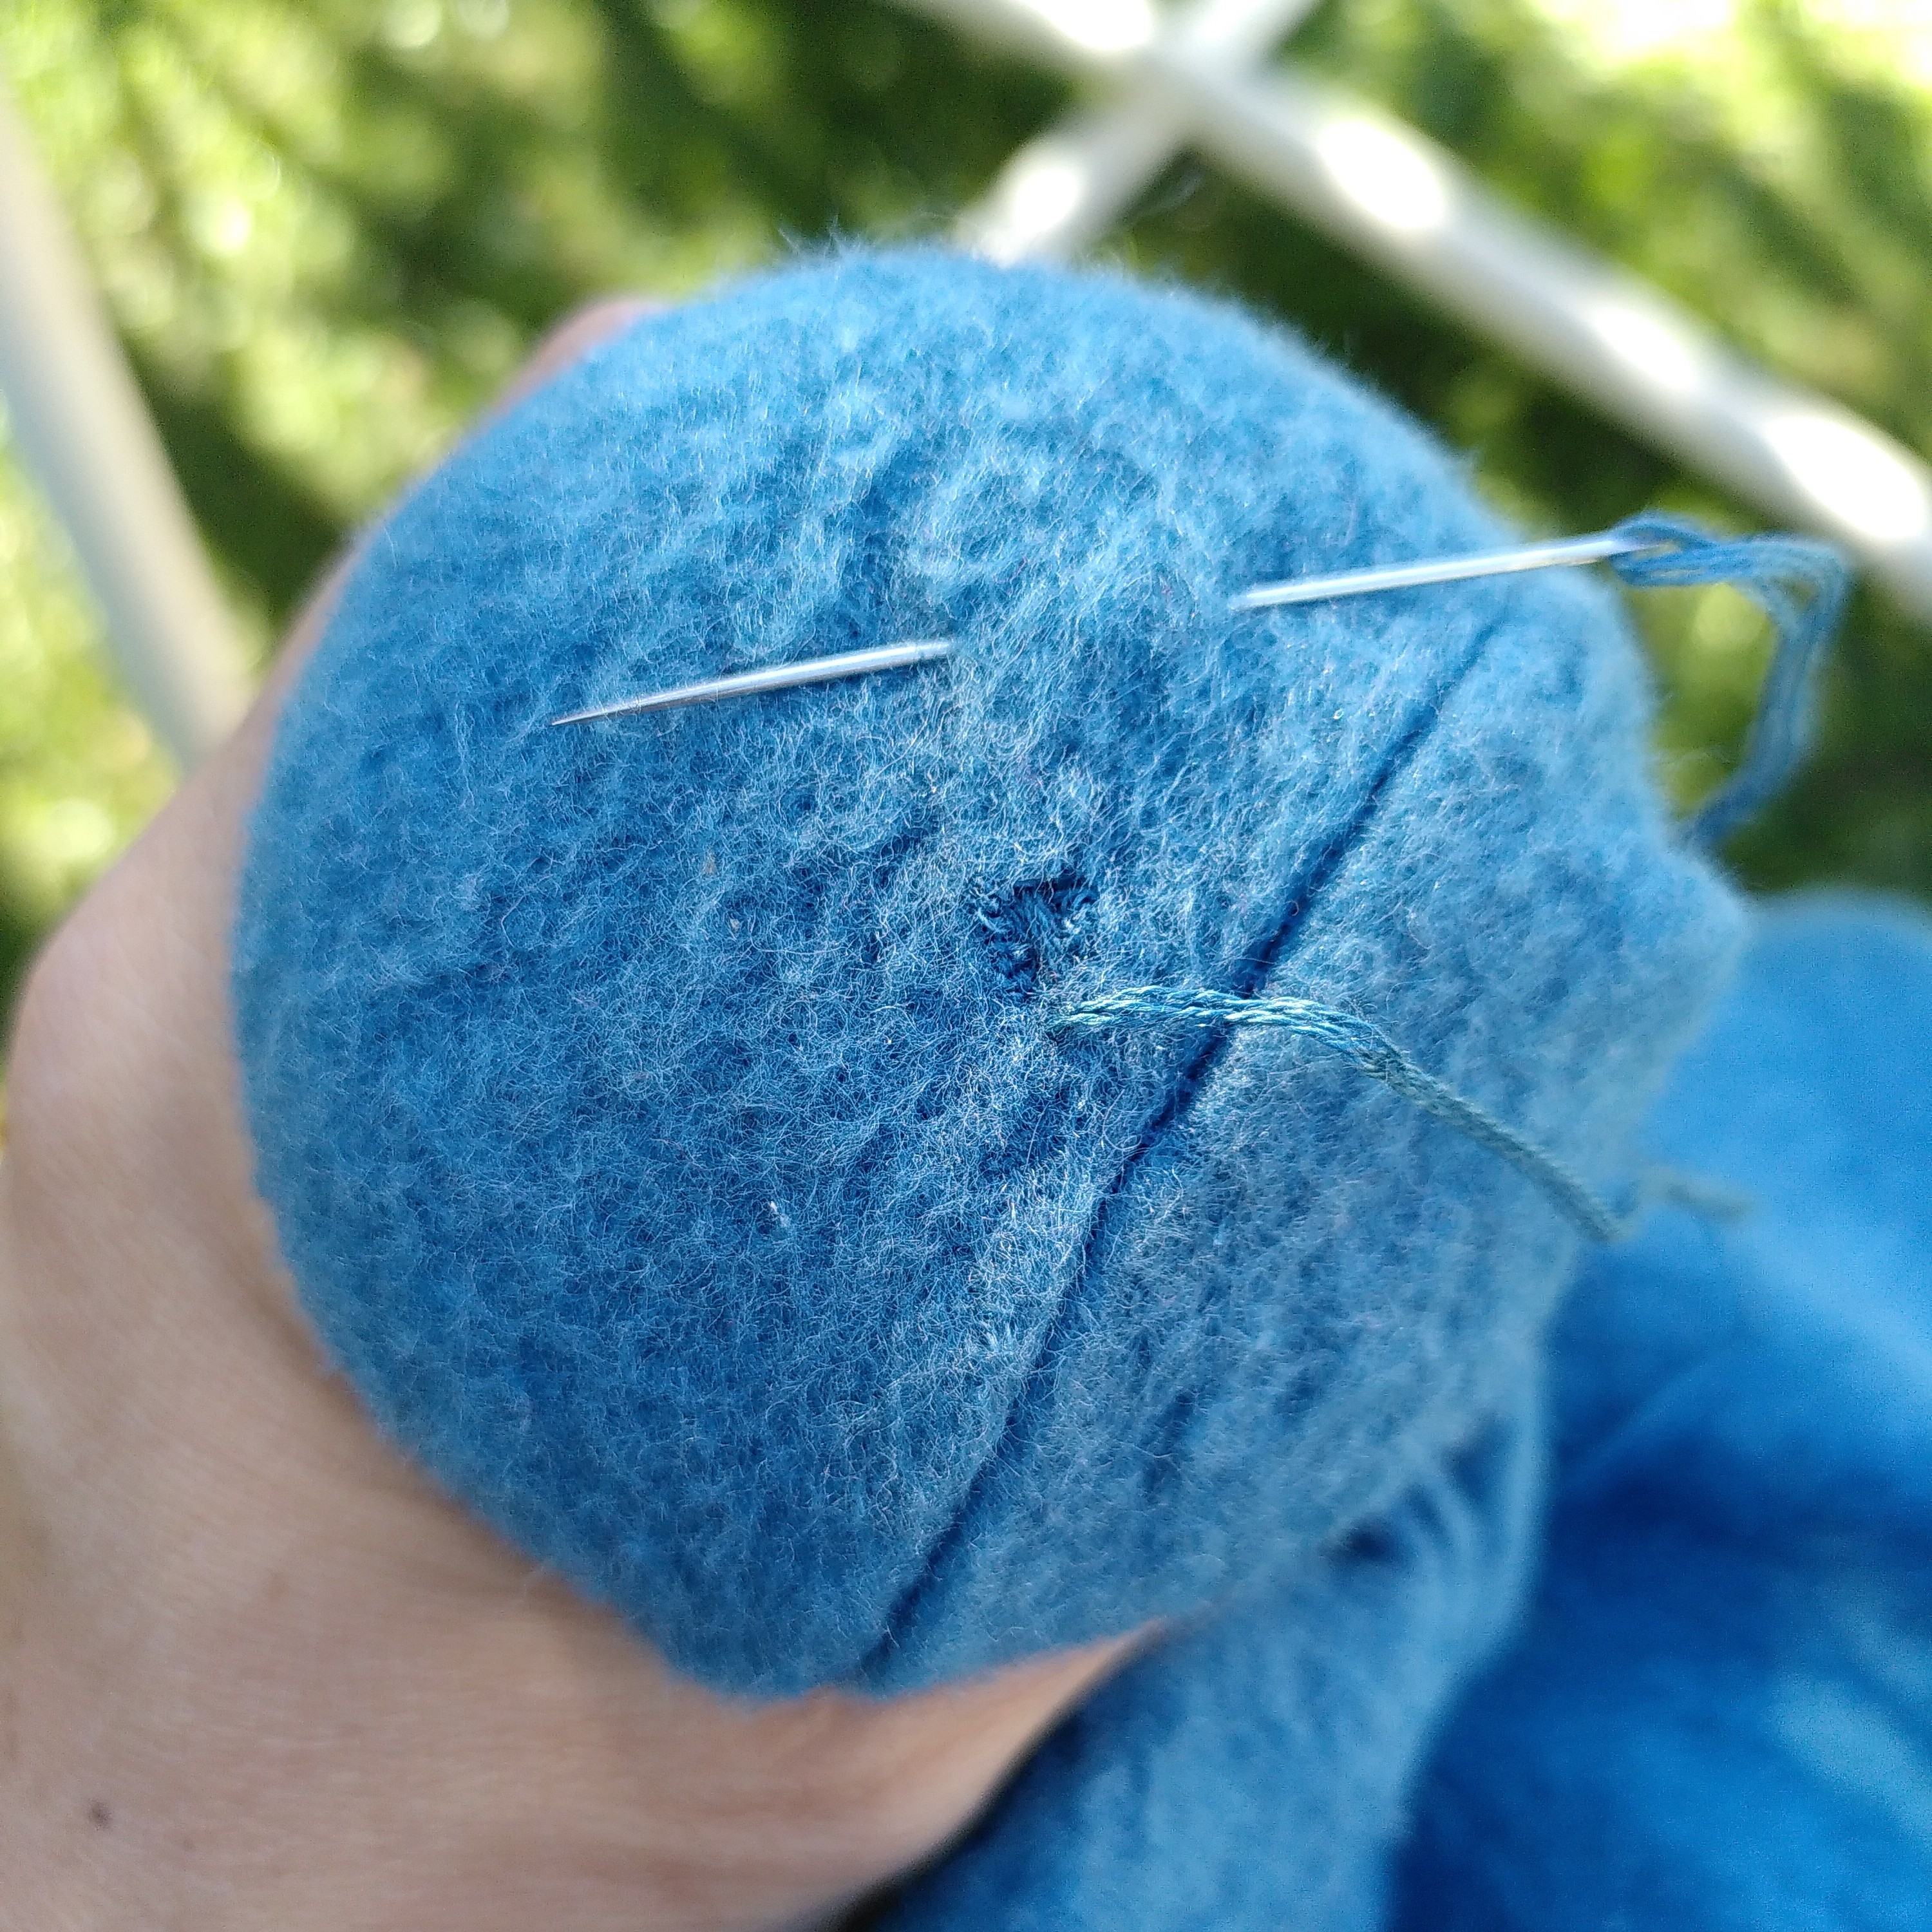 Verschlossenes Loch in einem hellblauen Wollfleeceschlafsack. Man sieht, dass ein Stopfpilz unter dem Soff liegt und eine Hand diesen festhält. Oben im Stoff steckt eine Nadel, durch die das genutzte hellblaue Stopfgarn hindurchgefädelt ist.